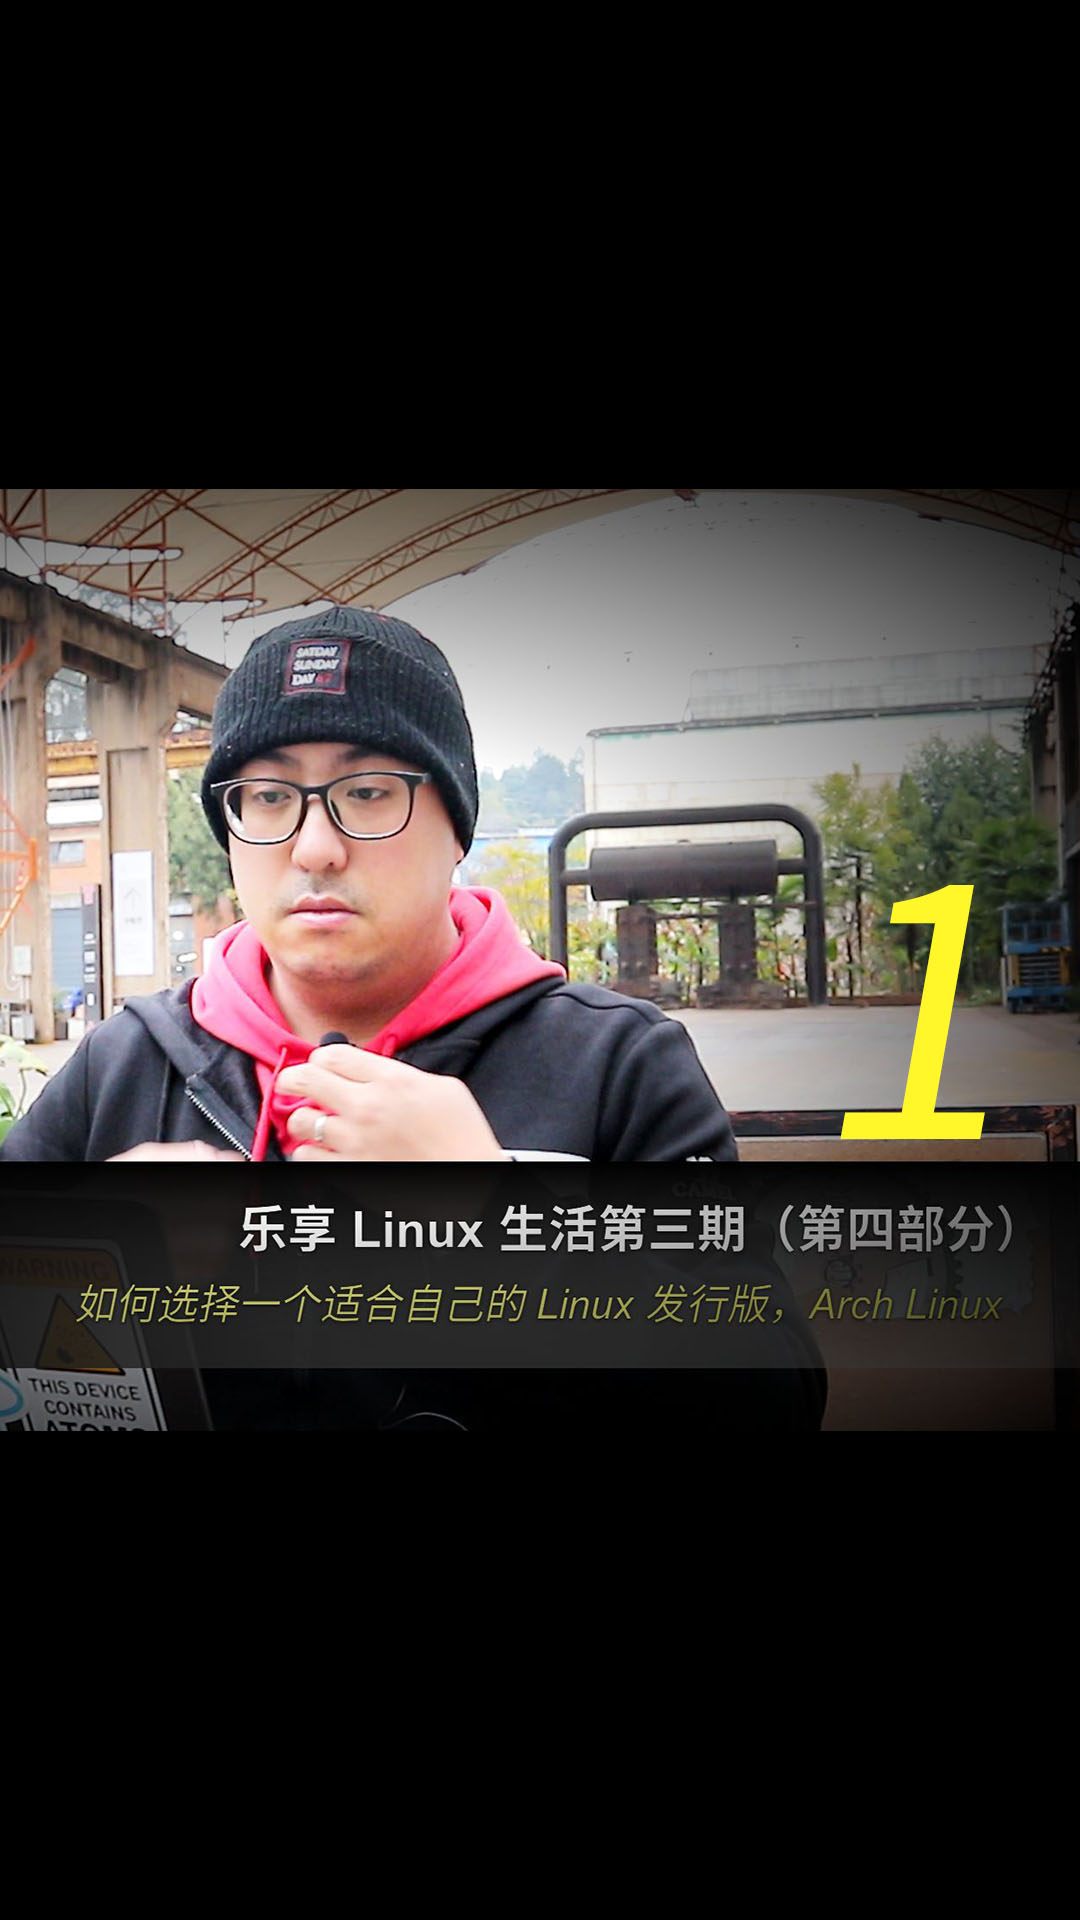 乐享 Linux 生活第三期（第四部分），如何选择一个适合自己的 Linux 发行版，Arch Linux1